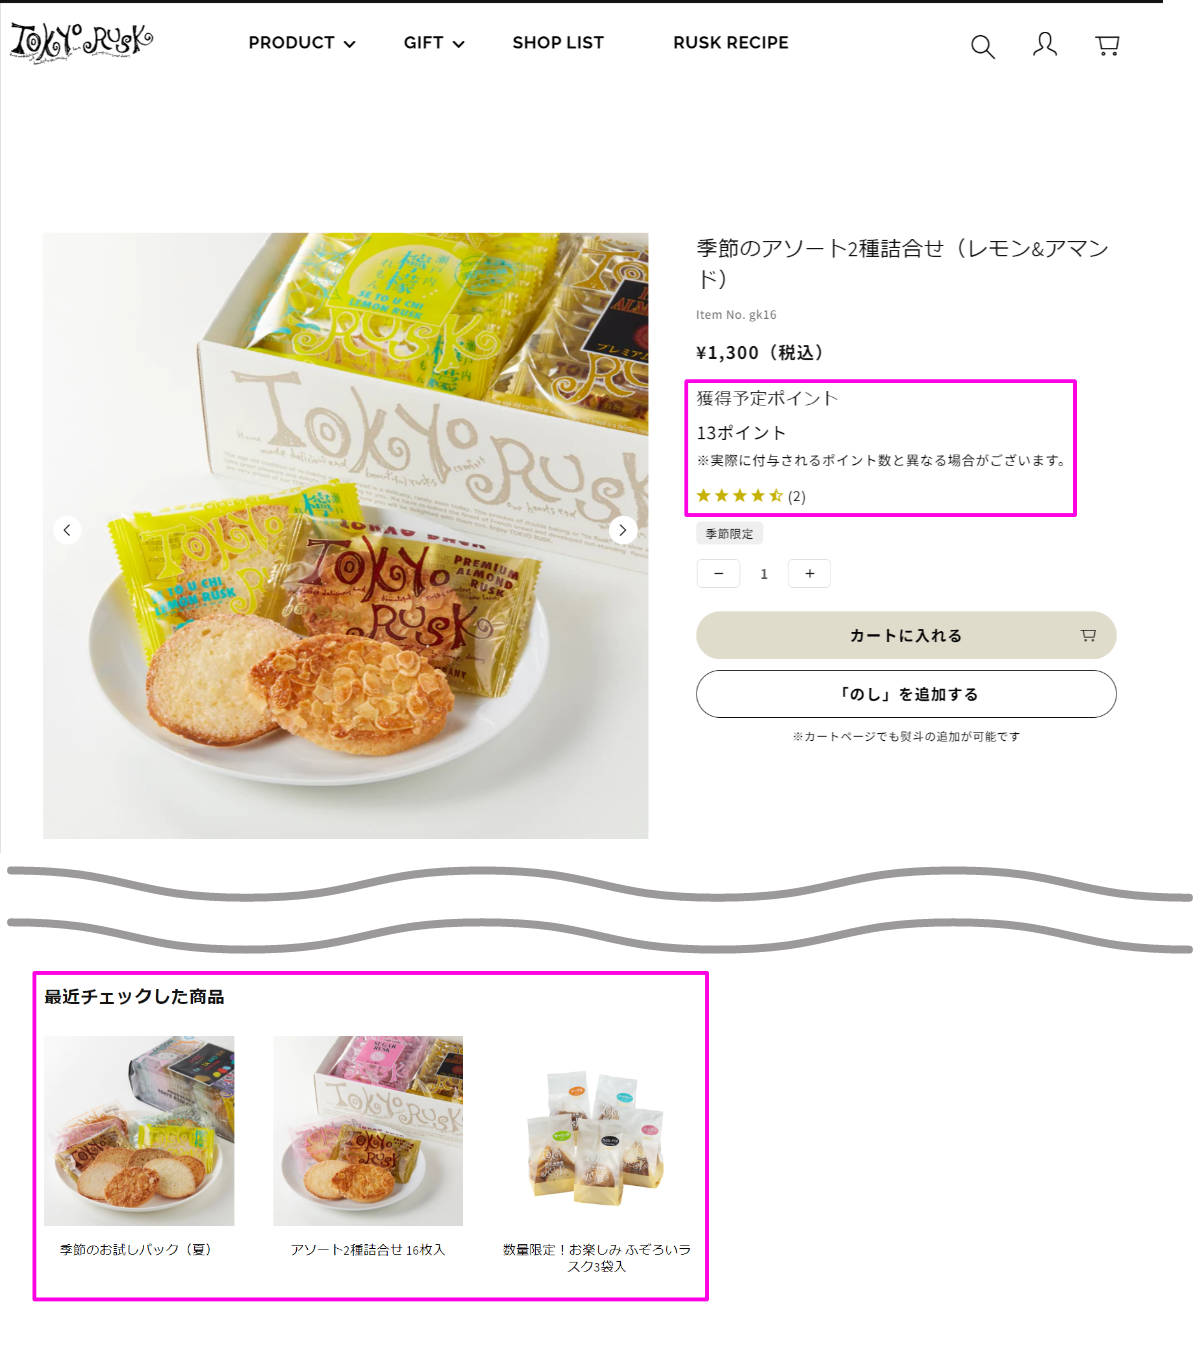 ラスク専門店<a href="https://www.tokyorusk.co.jp/" target="_blank">東京ラスクのオンラインショップ</a>では、ポイント機能で商品購入に特典を付与したり、レビュー機能で商品の情報をさらに充実。また、「最近チェックした商品」で、商品情報をさらに見てもらえる工夫をしている